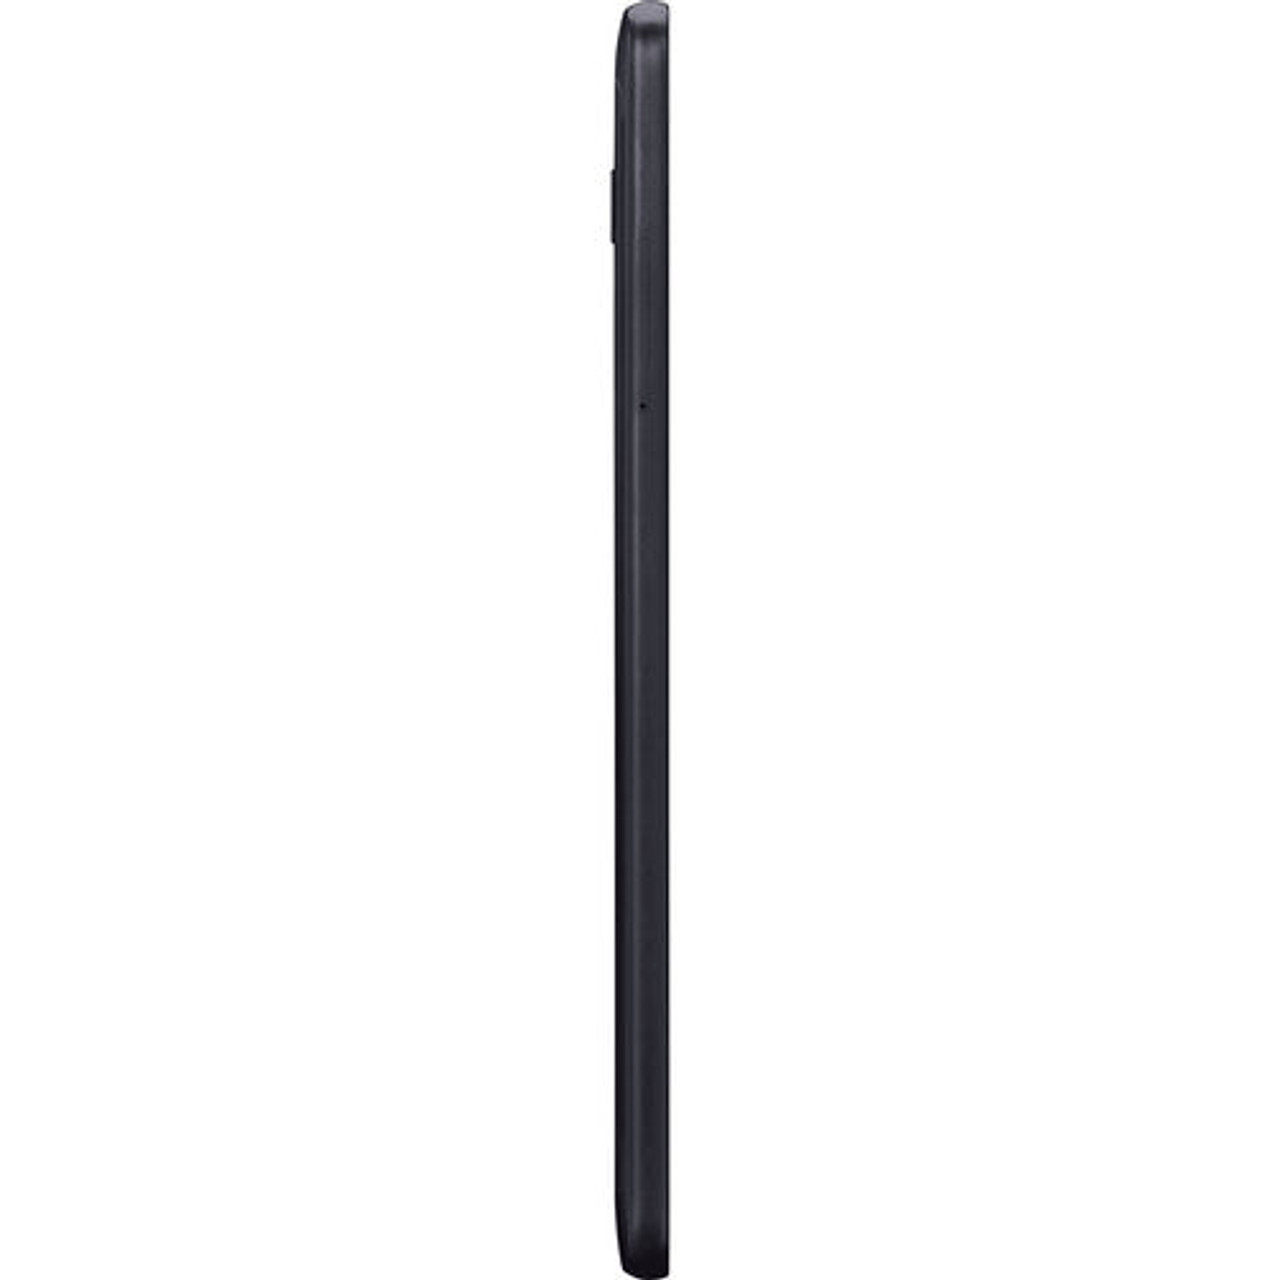 Samsung SM-T387AZKAATT-RB 8.0" Galaxy Tab A 32GB WiFi LTE ATT Android Tablet, Black - Certified Refurbished